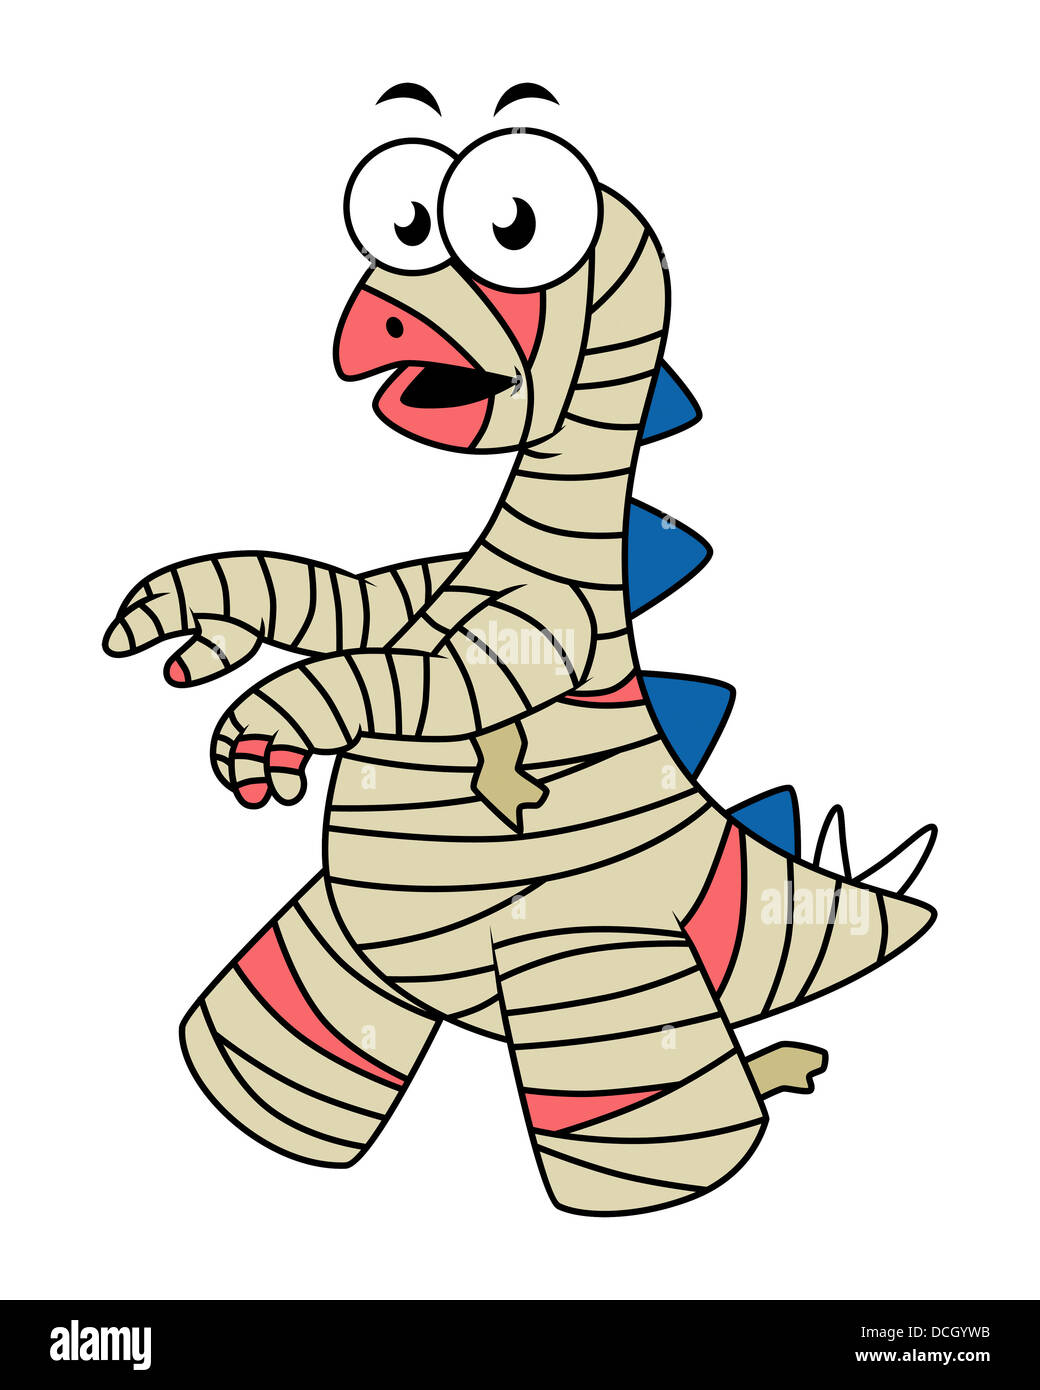 Cartoon-Illustration von einem Stegosaurus gekleidet wie eine Mumie. Stockfoto